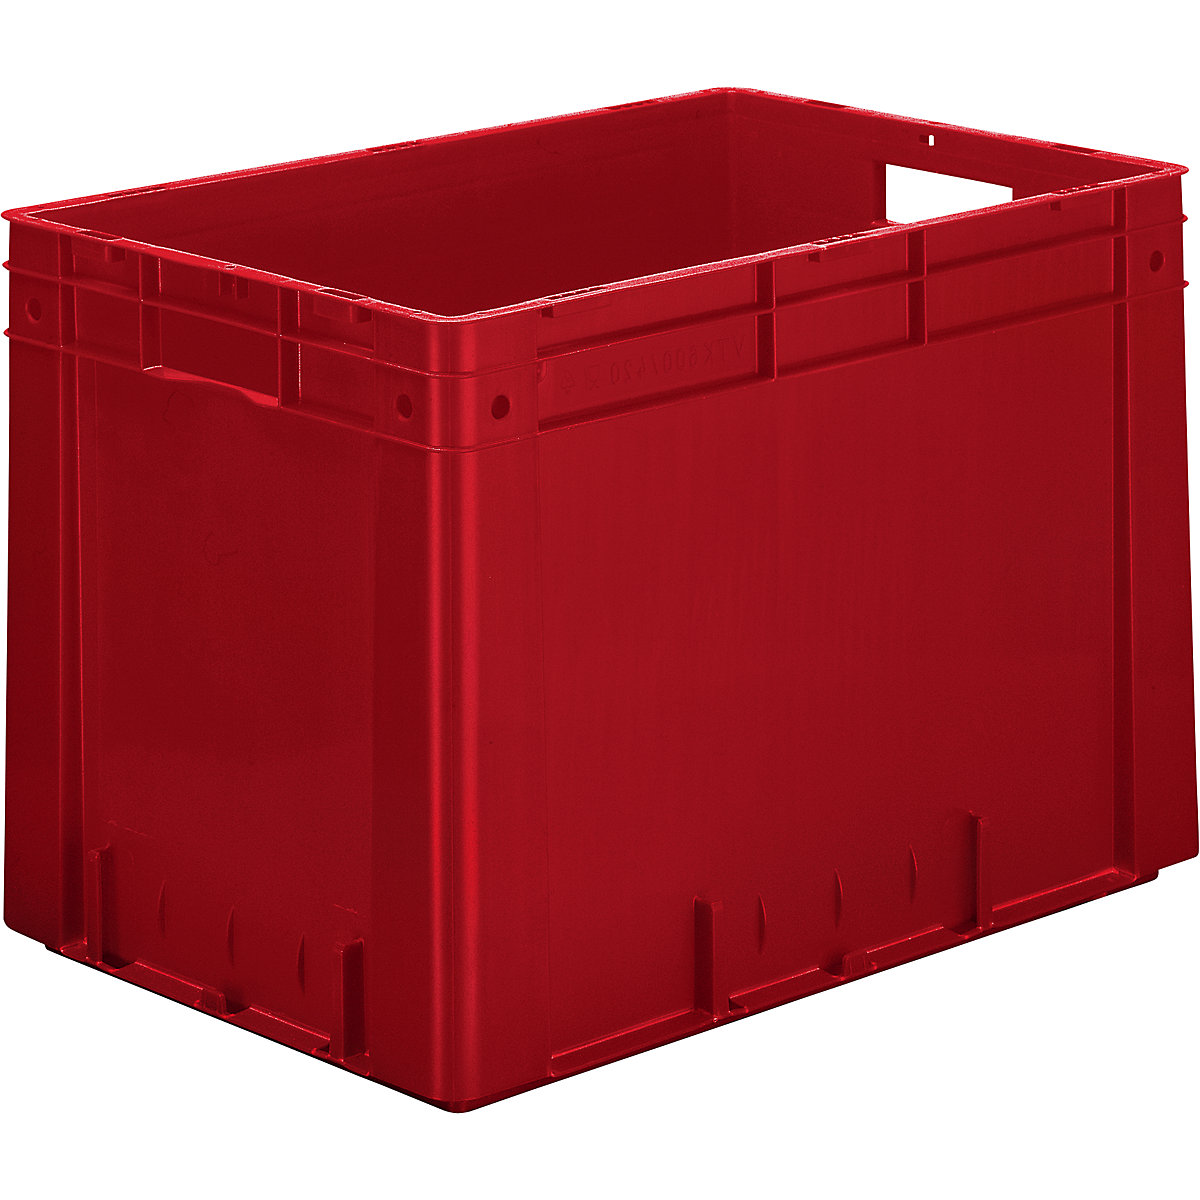 Schwerlast-Euro-Behälter, Polypropylen, Volumen 80 l, LxBxH 600 x 400 x 420 mm, Wände geschlossen, Boden geschlossen, rot, VE 2 Stk-4